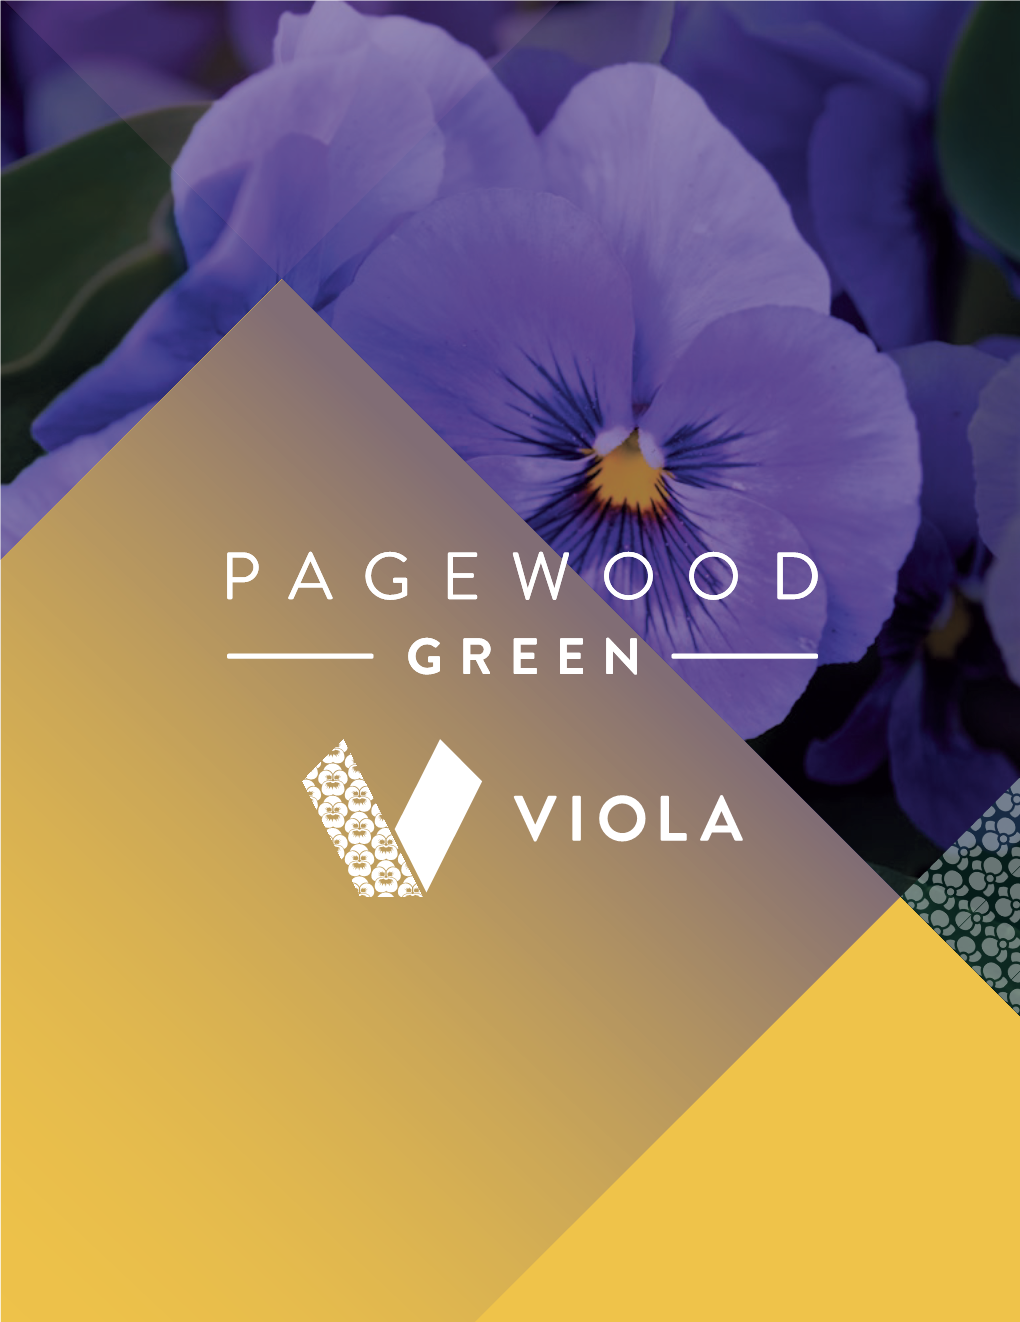 Pagewood Viola Brochure EN